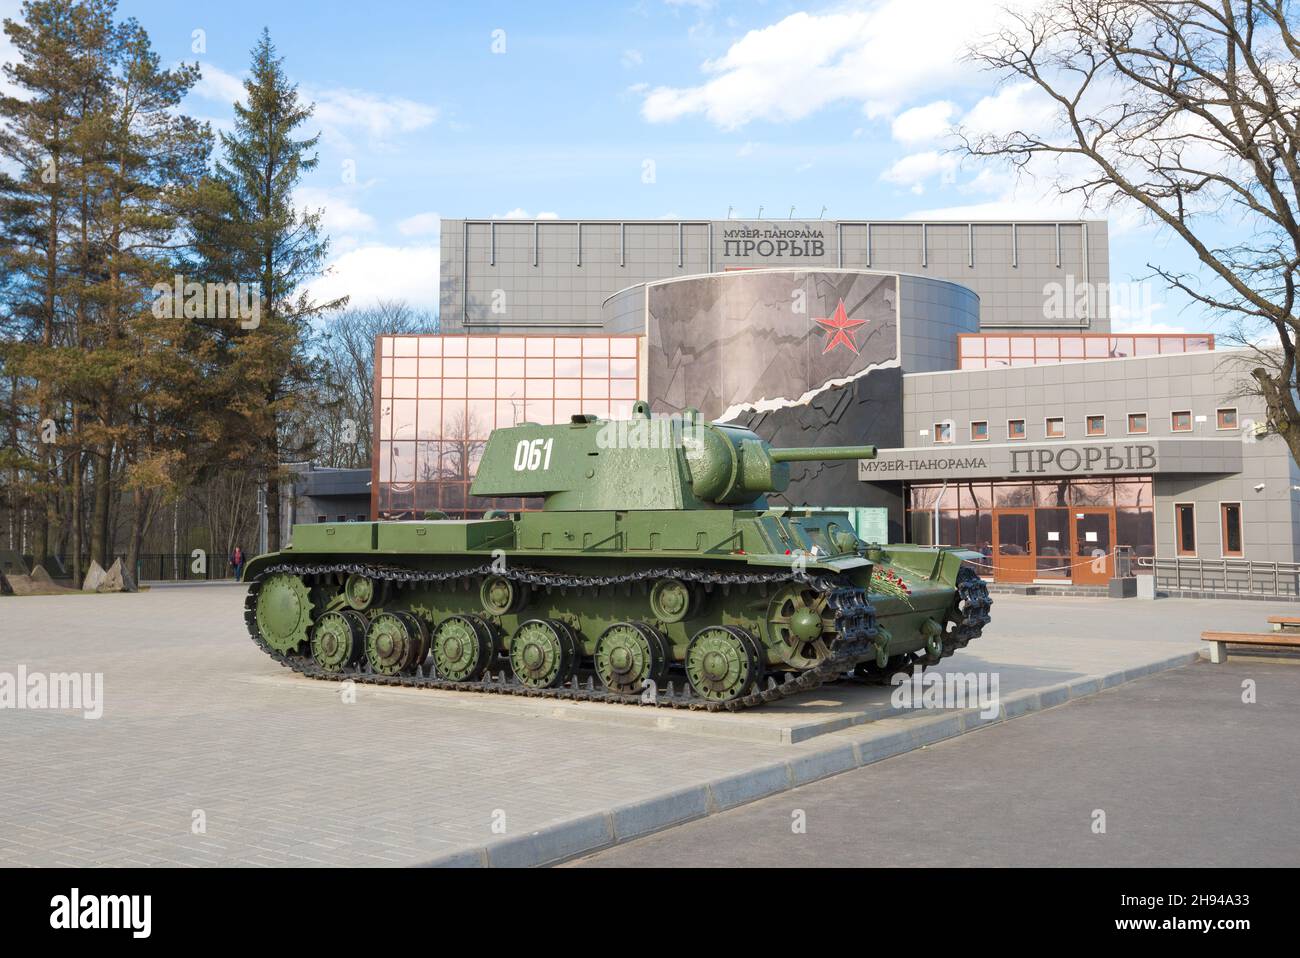 KIROVSK, RUSSLAND - 14. MAI 2017: Sowjetischer schwerer Panzer KV-1 in der Nähe des Gebäudes des 'Durchbruch'-Museums im Mai Stockfoto